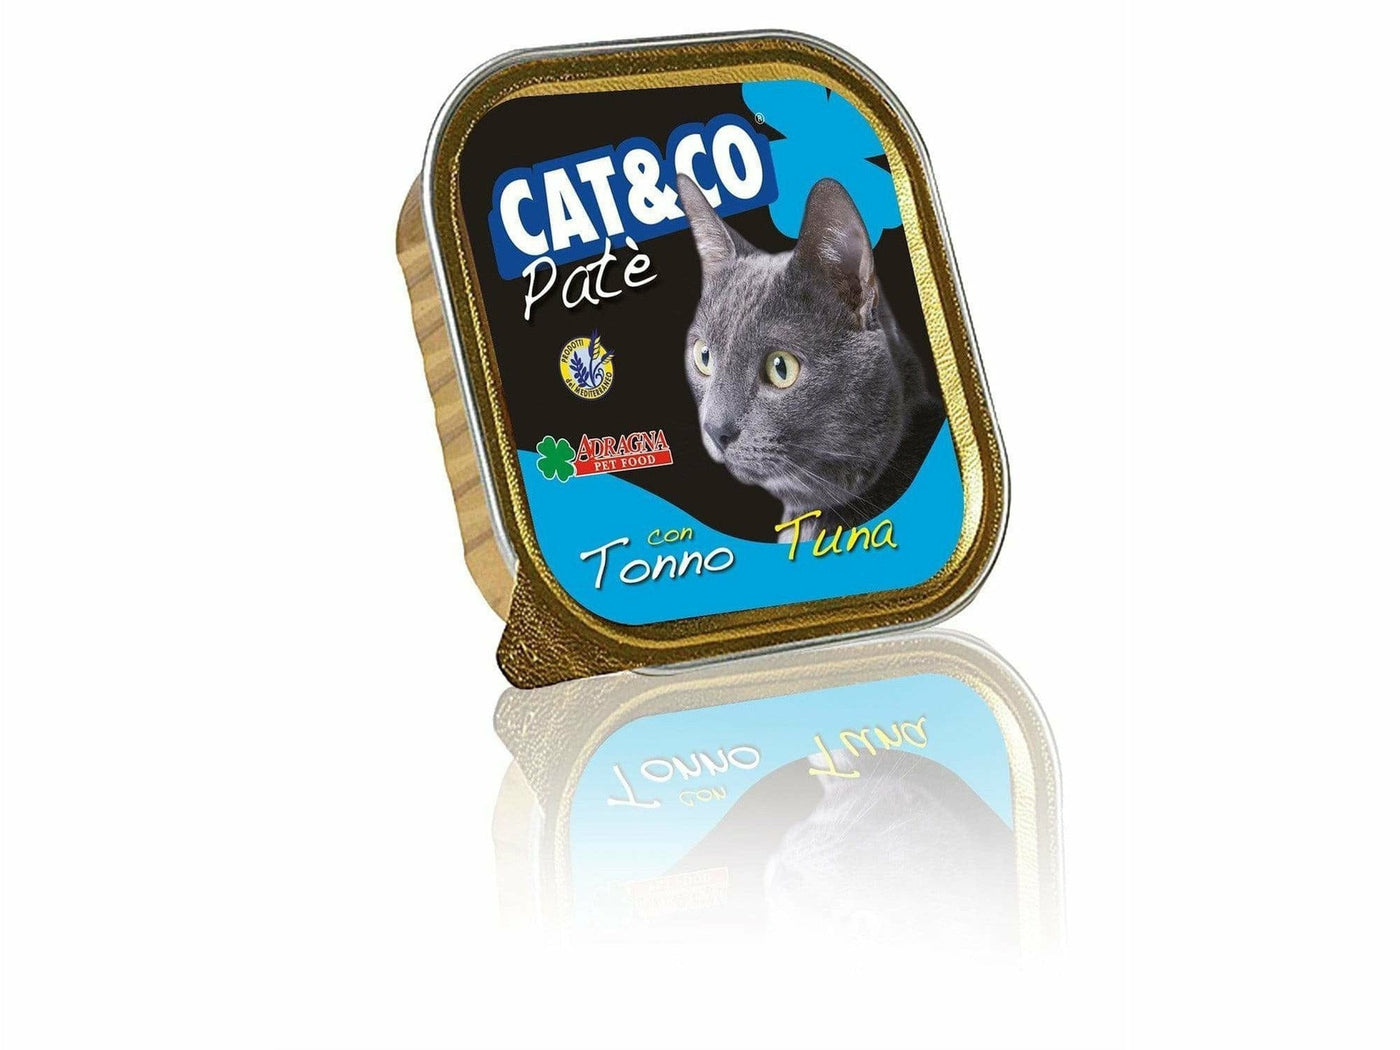 Cat & Co PATE TUNA 100g